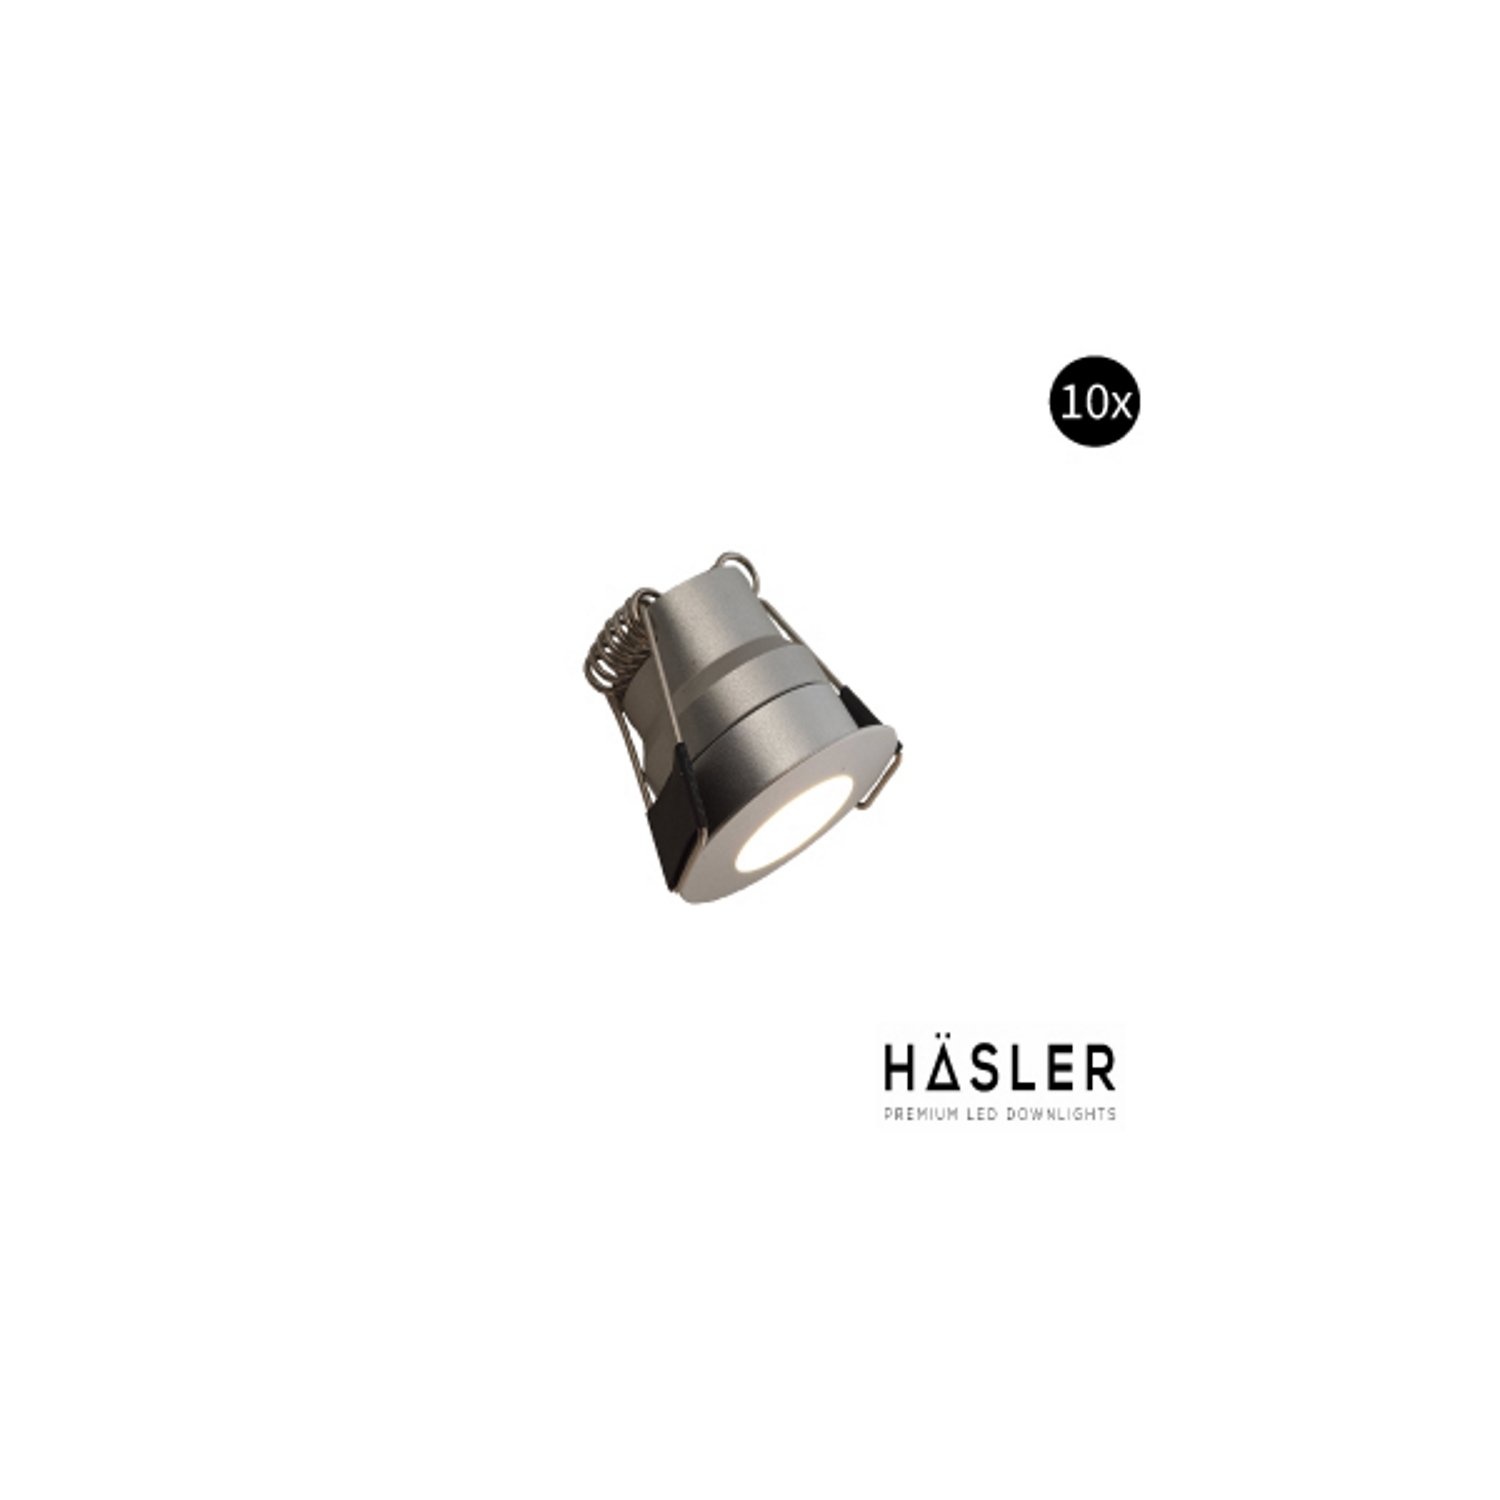 Hasler Inbouwspot Häsler Grado Incl. Fase Aansnijding Dimbaar 3.4 cm 1.8 Watt Warm Wit RVS look Set 10x - Set 2 Spots